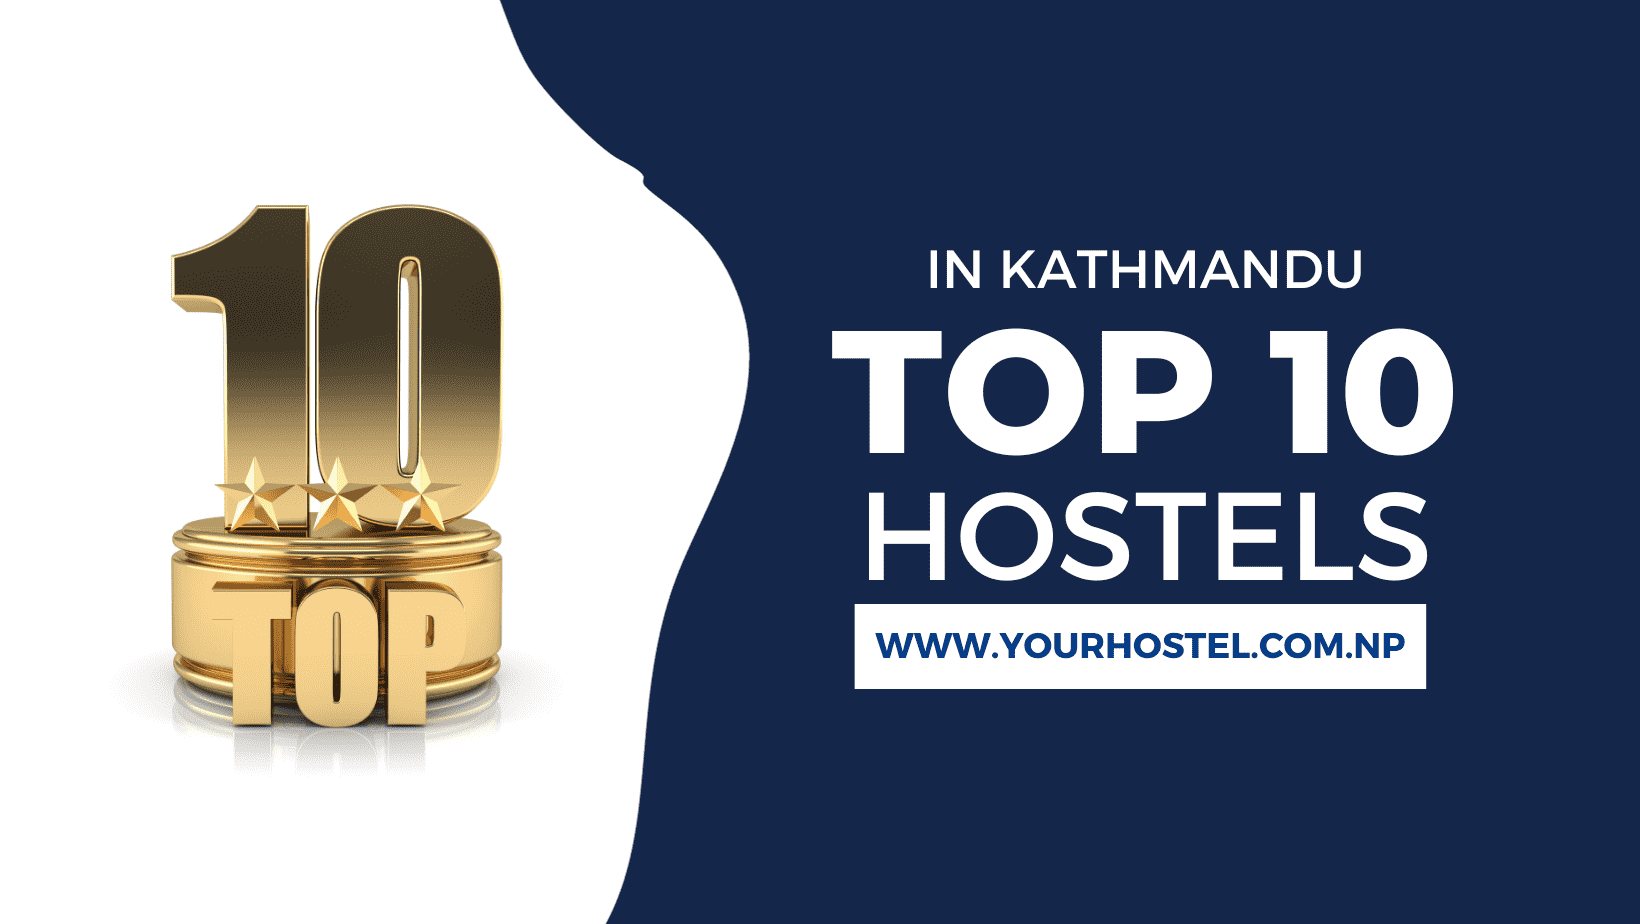 Top 10 Best Hostels in Kathmandu for Students